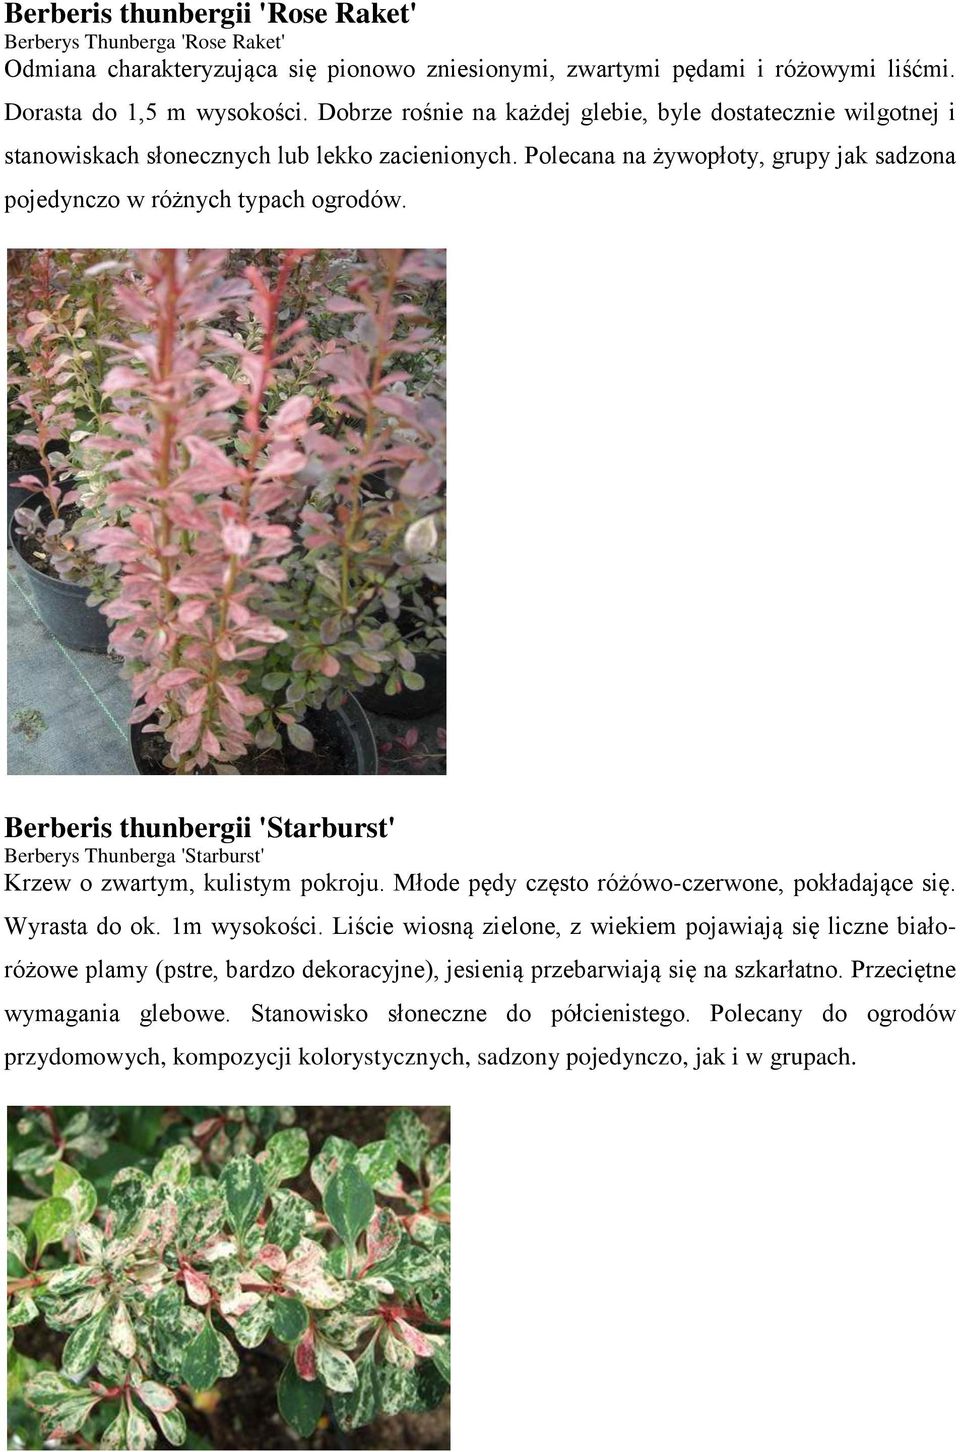 Berberis thunbergii 'Starburst' Berberys Thunberga 'Starburst' Krzew o zwartym, kulistym pokroju. Młode pędy często różówo-czerwone, pokładające się. Wyrasta do ok. 1m wysokości.